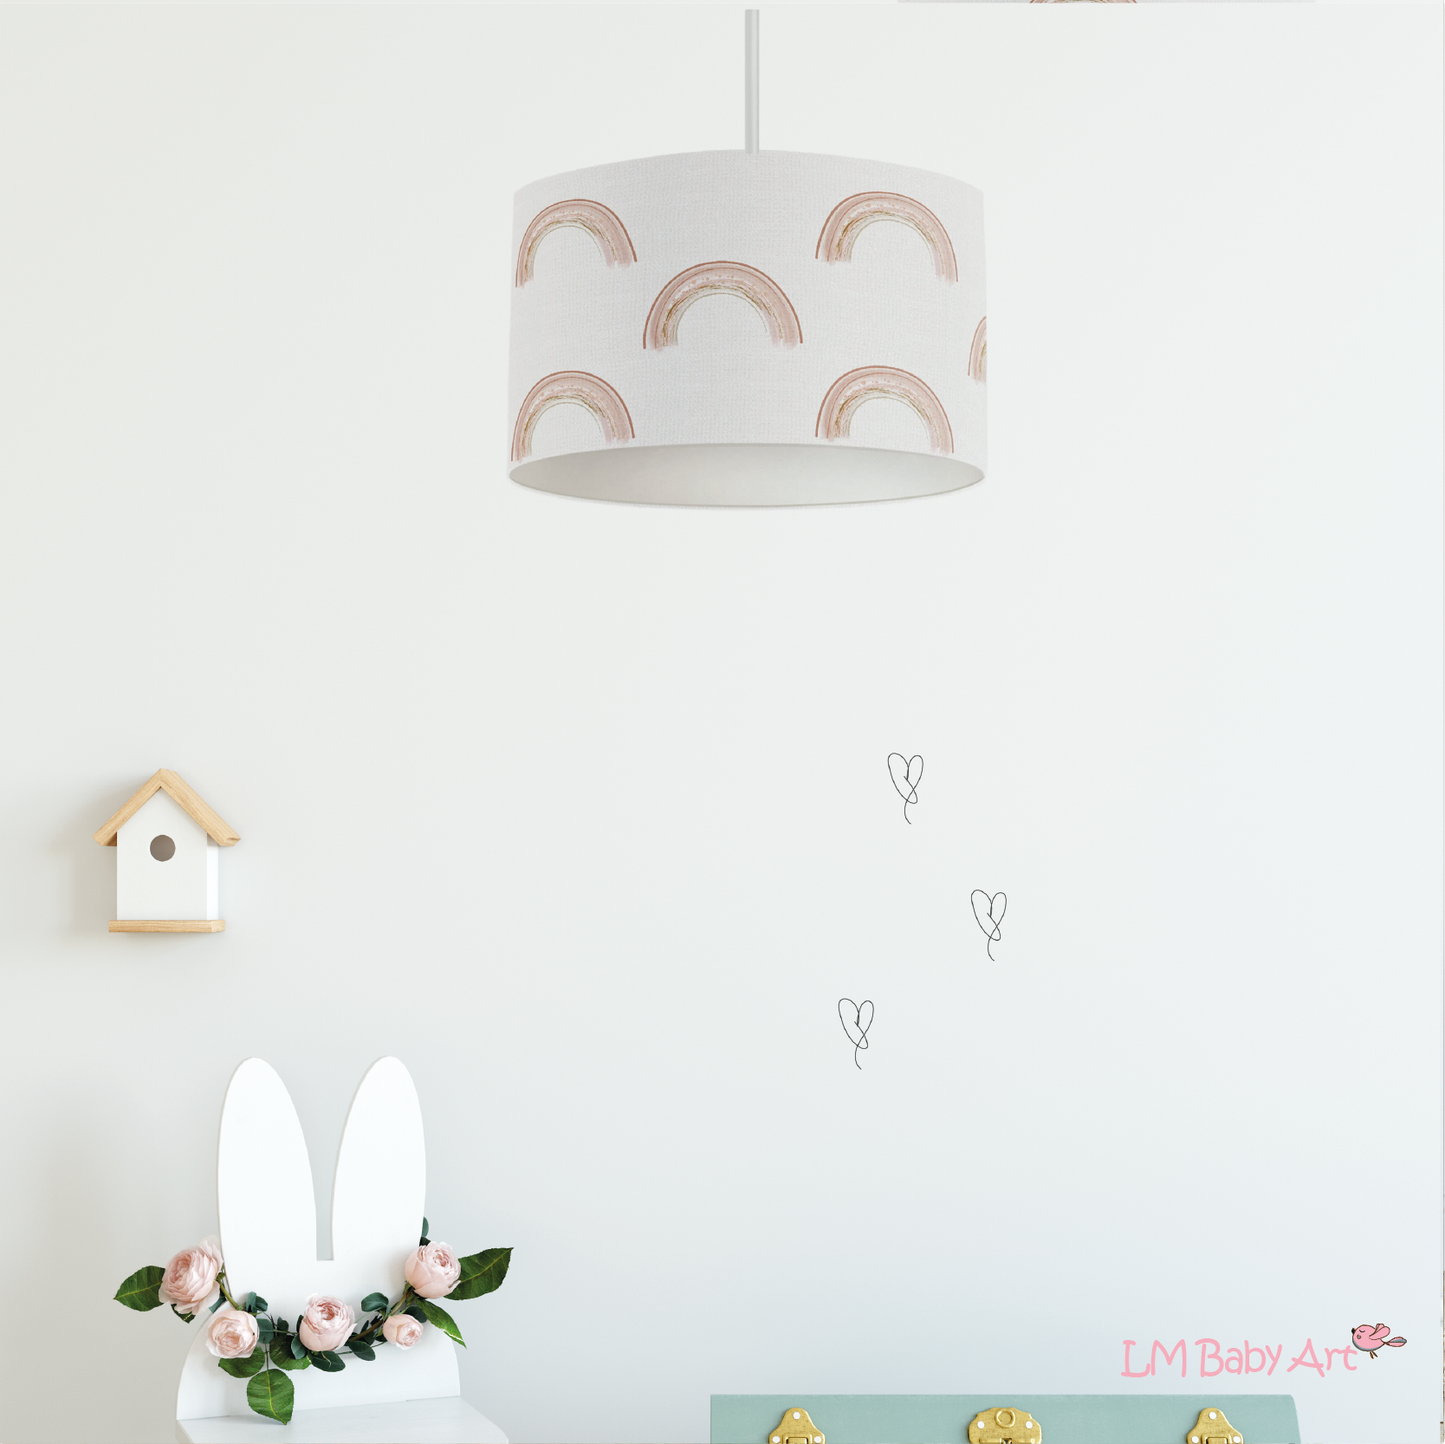 Hanglamp kleine regenbogen - LM Baby Art | Muurdecoratie voor de allerkleinsten